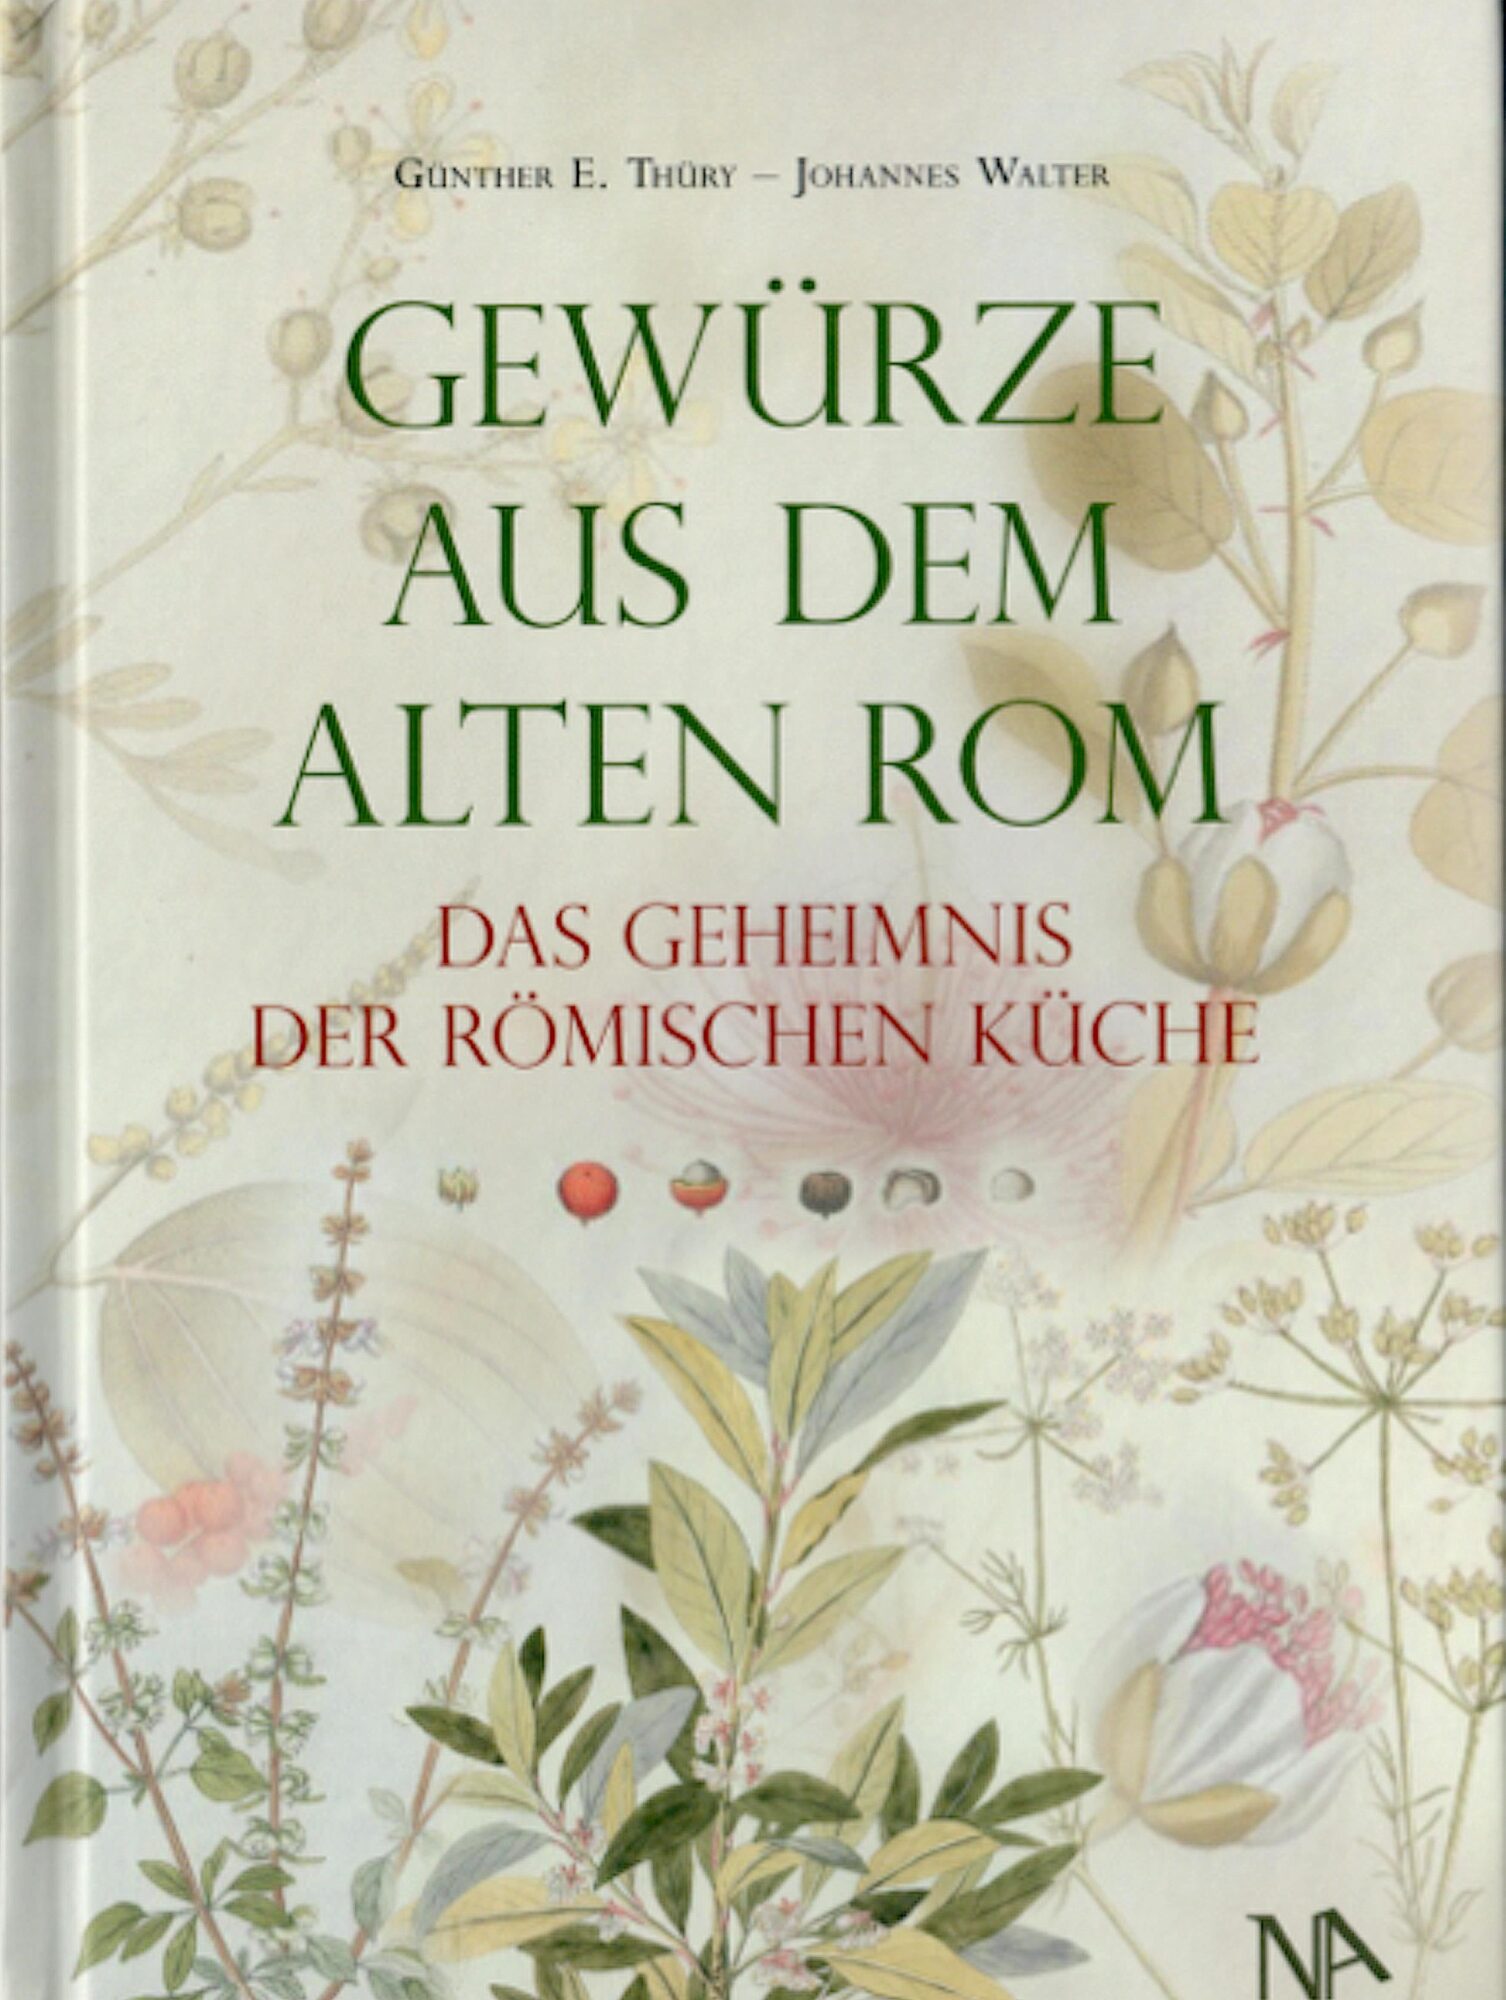 Neu erschienen: von Günther E. Thüry – Johannes Walter